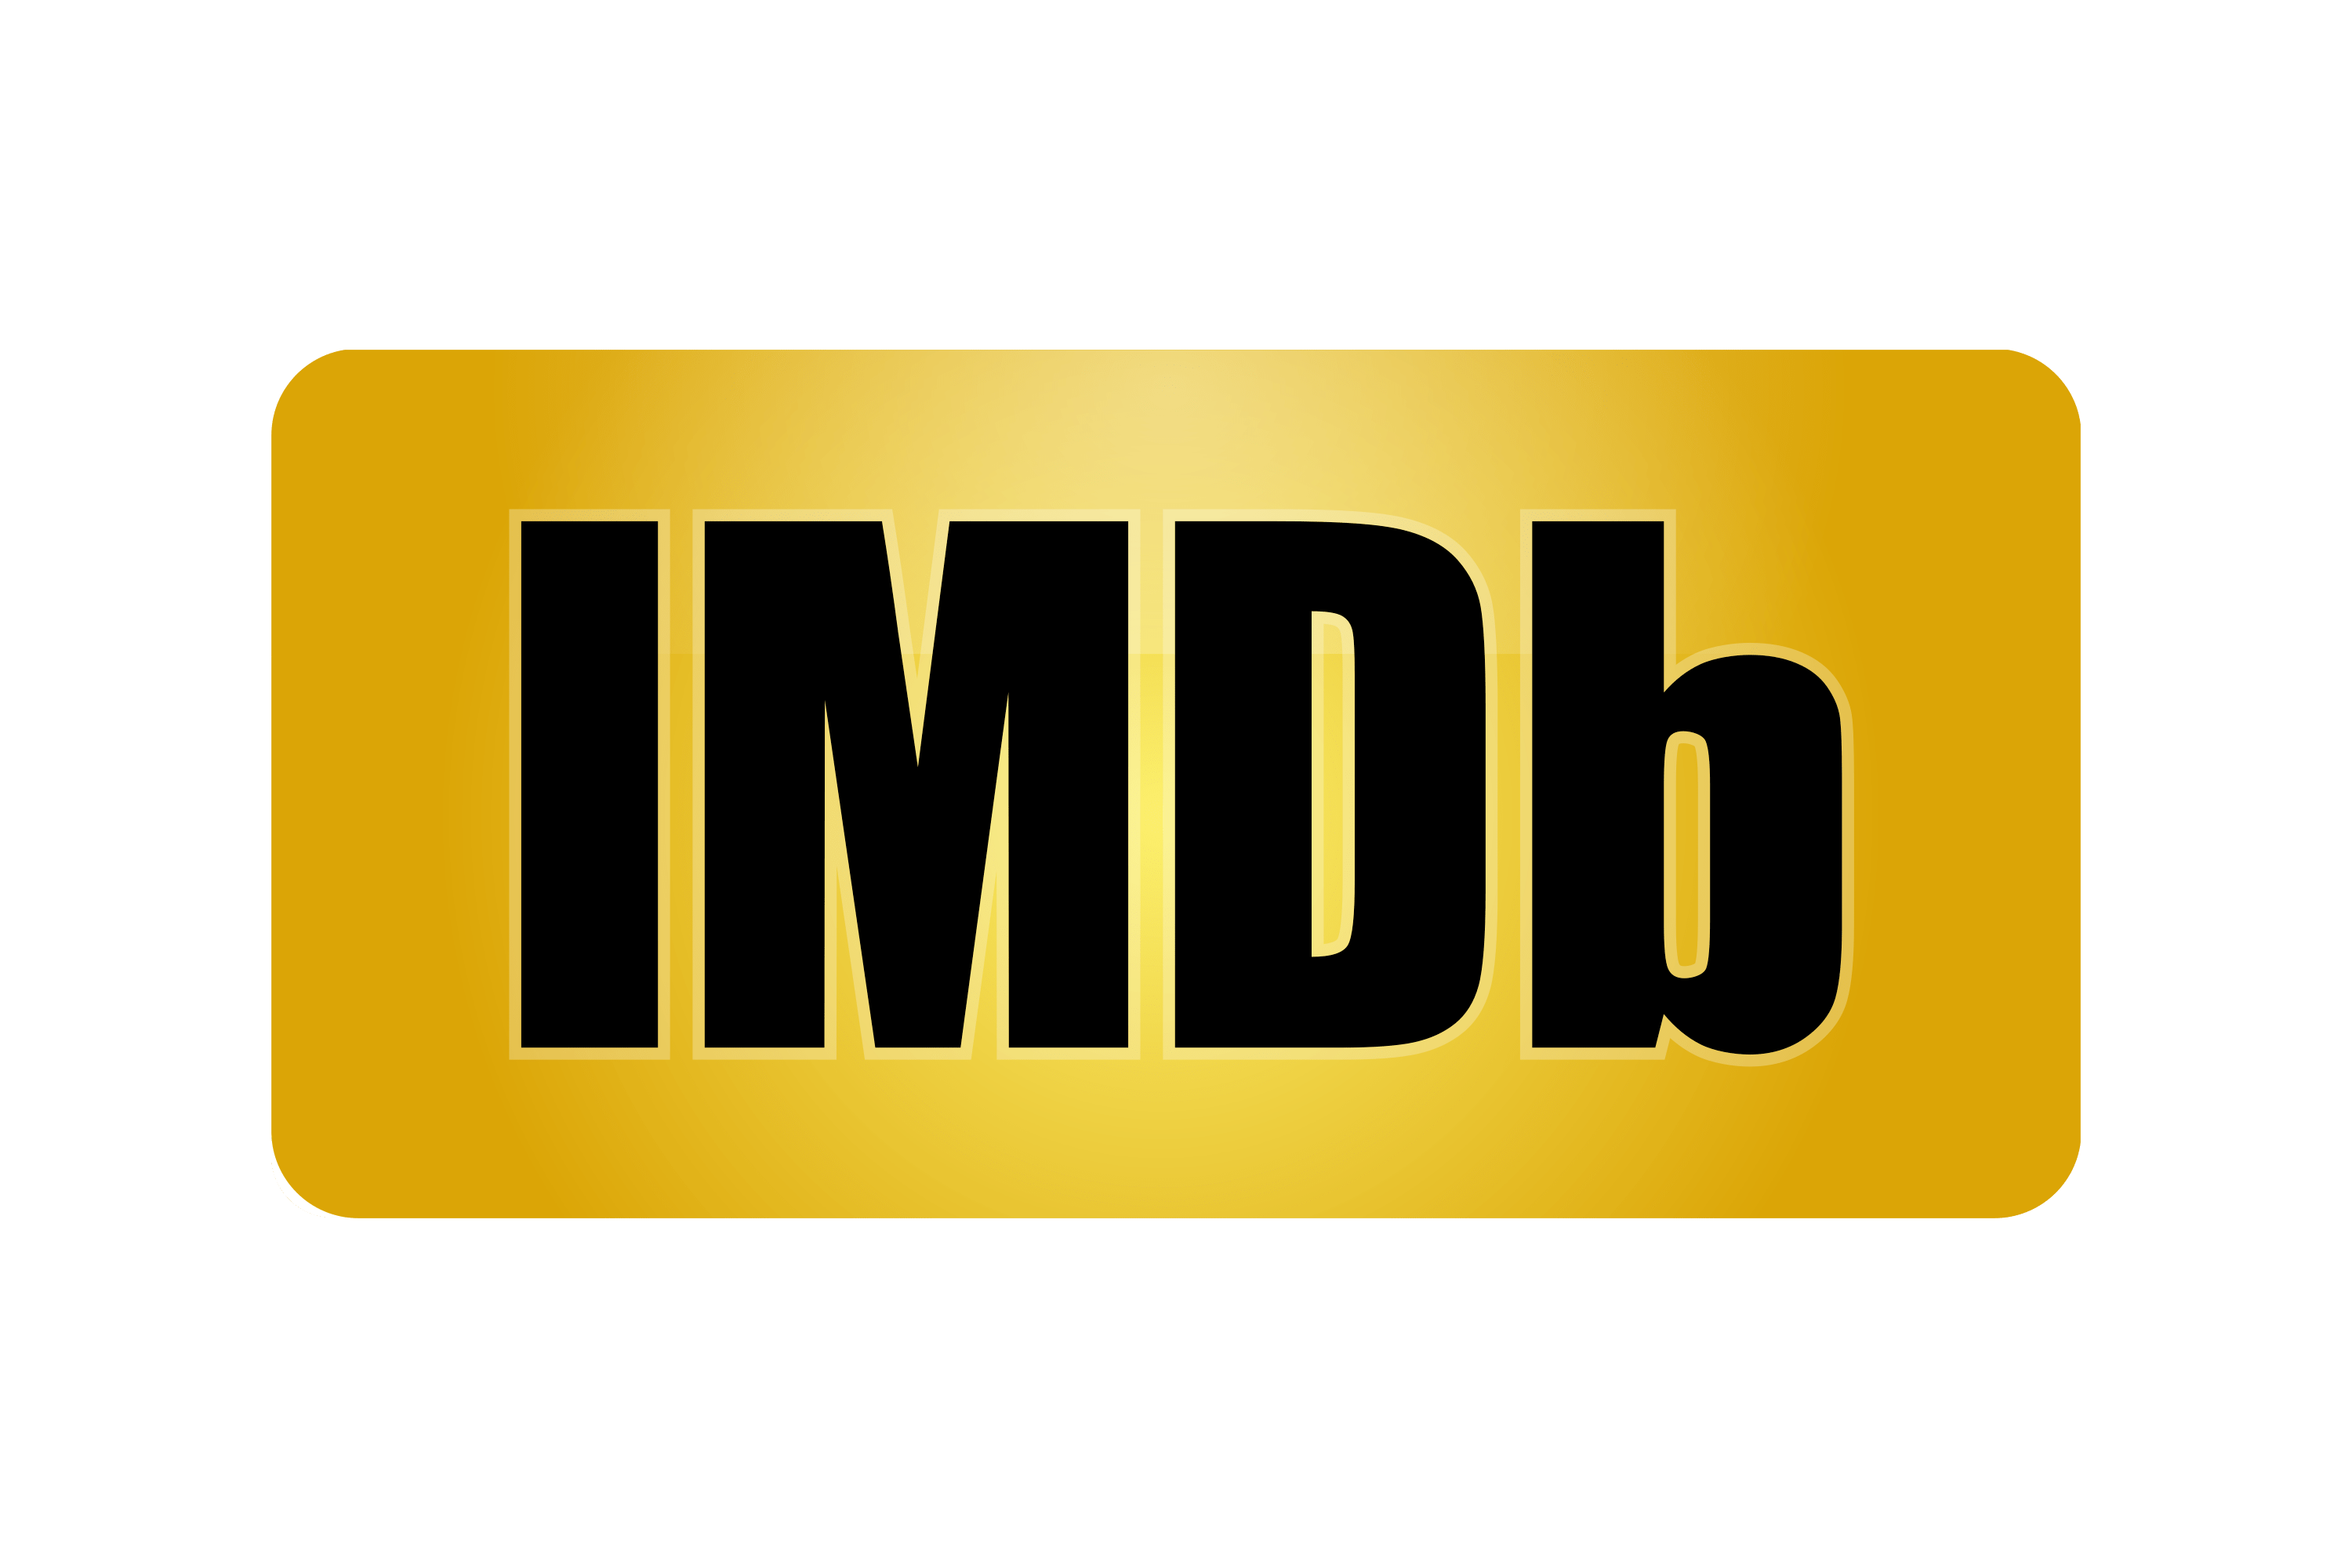 Internet Movie Database Logo